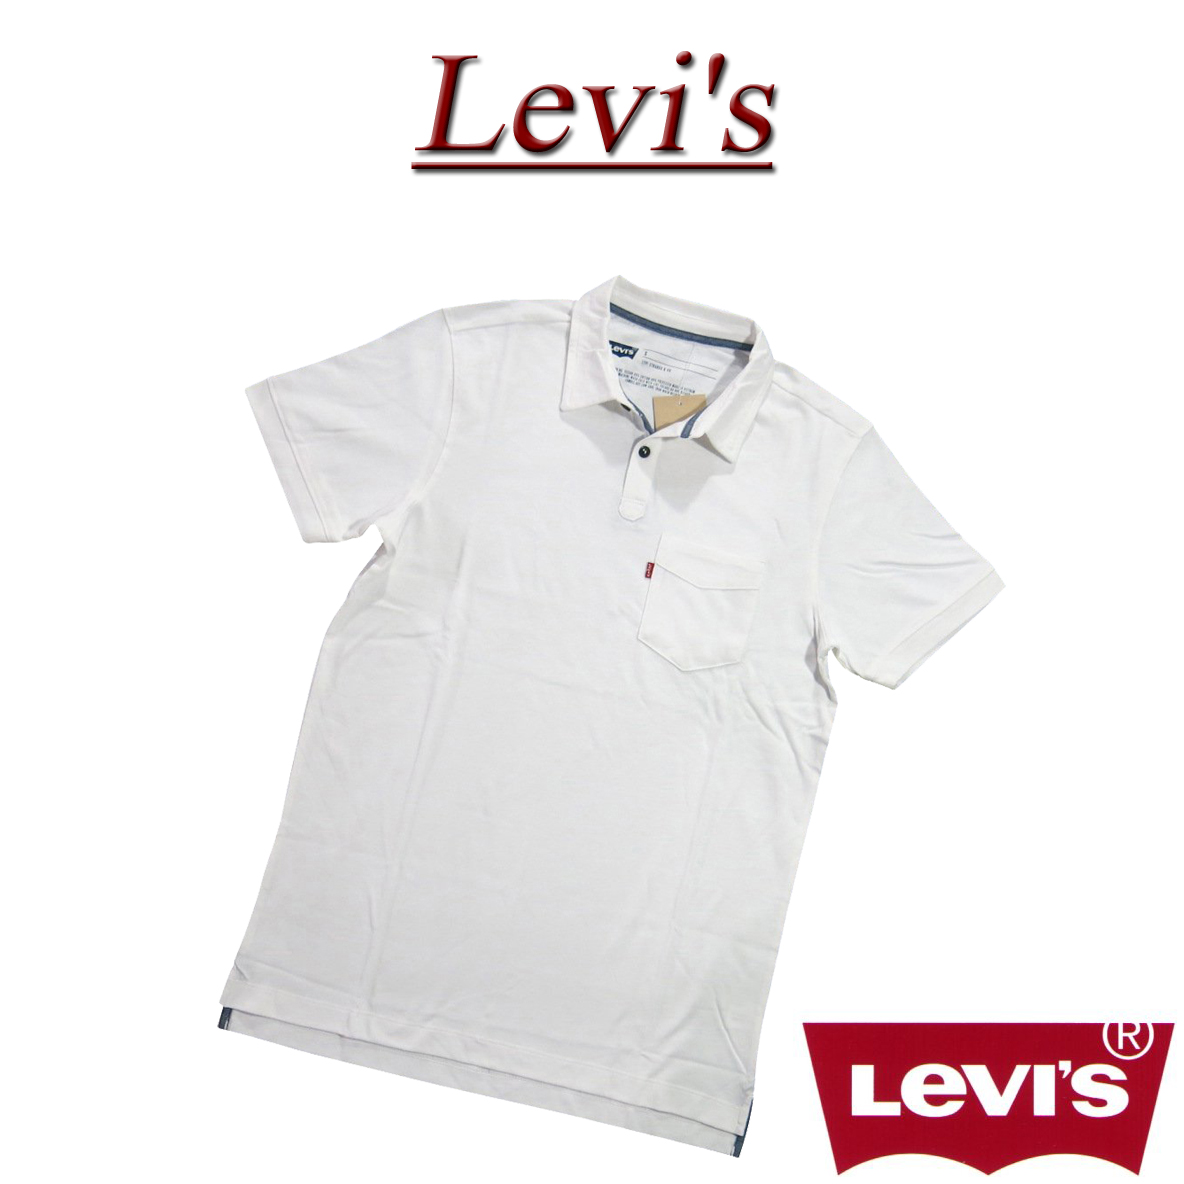 levis plain shirts